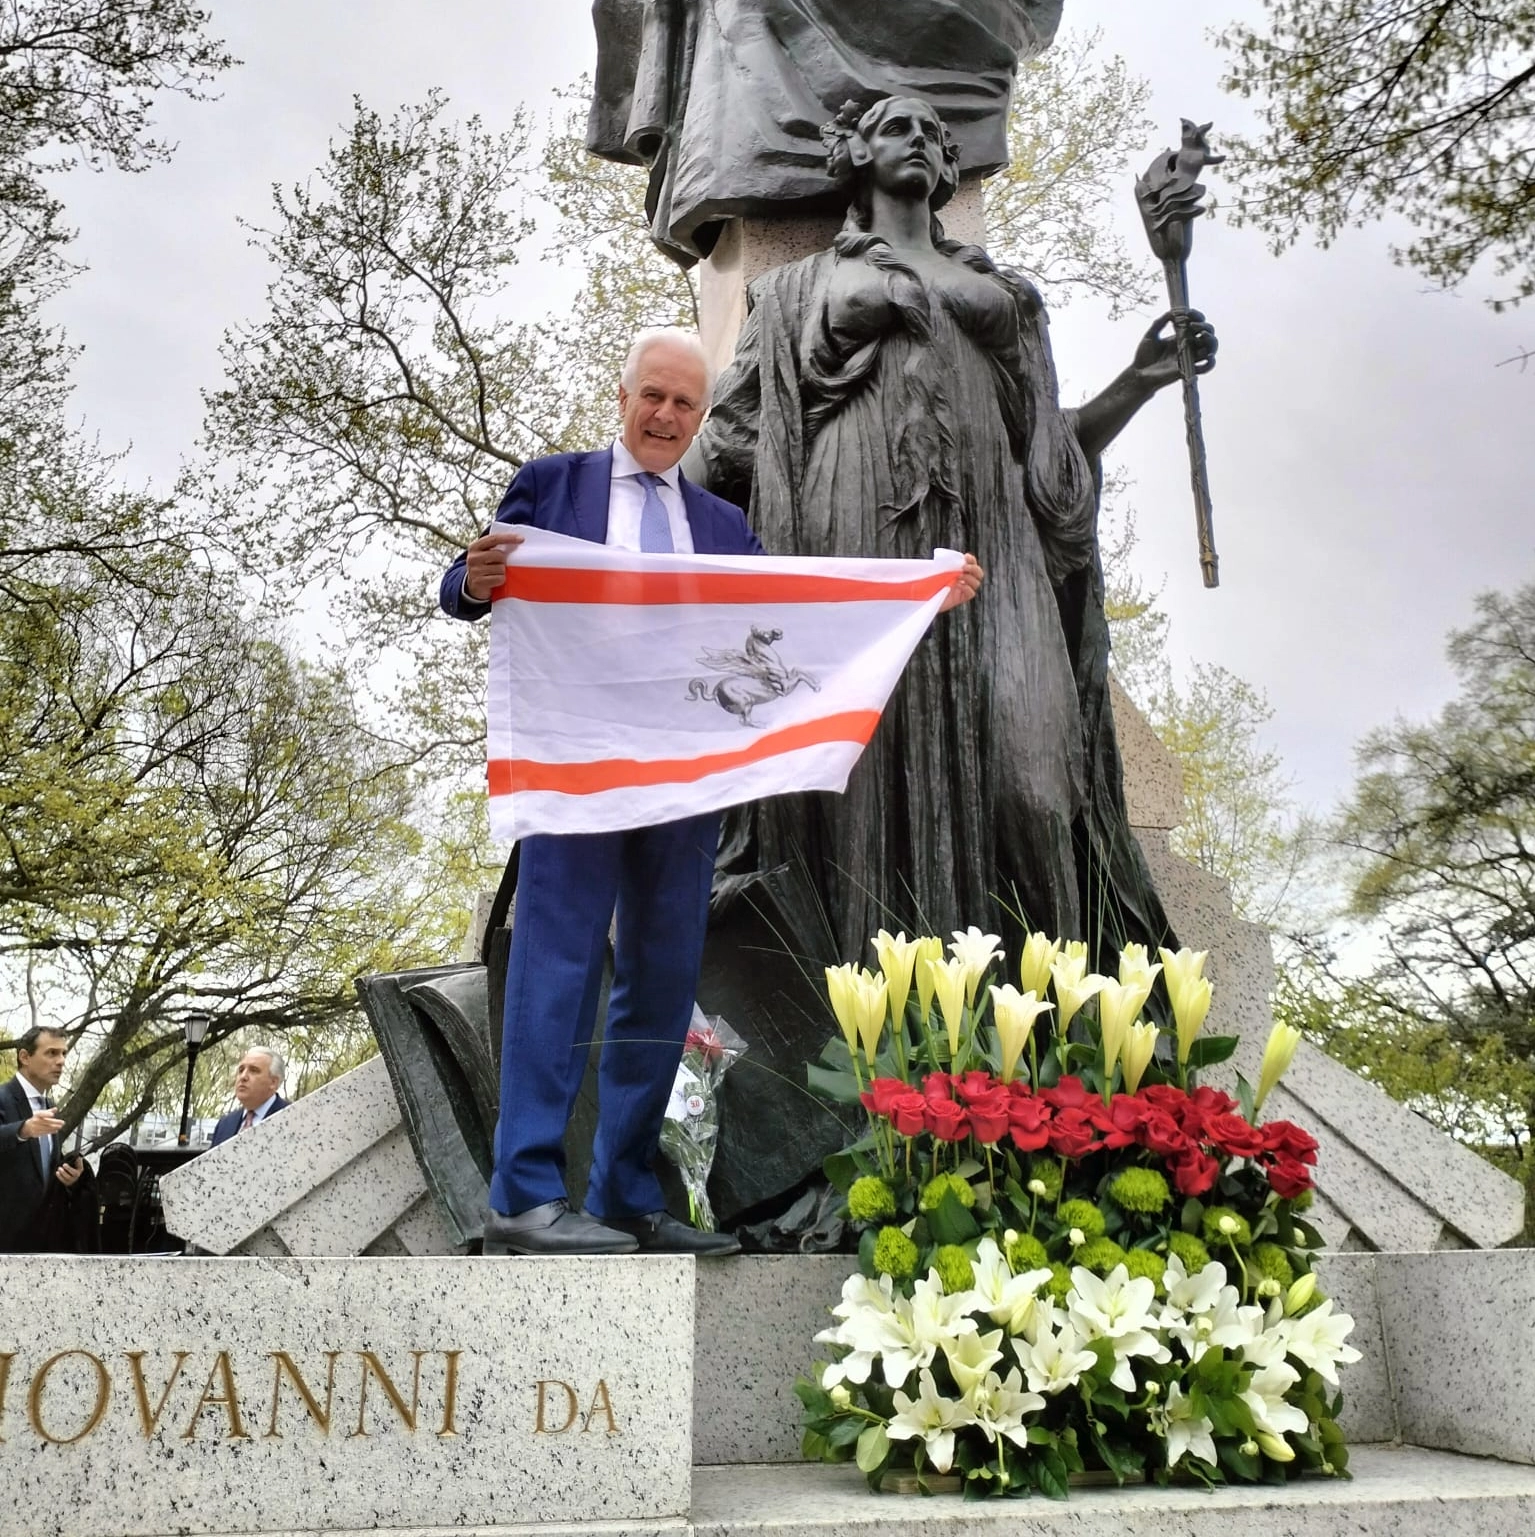 Il presidente Giani con la bandiera della Regione Toscana davanti al monumento dedicato a Giovanni Da Verrazzano a New York